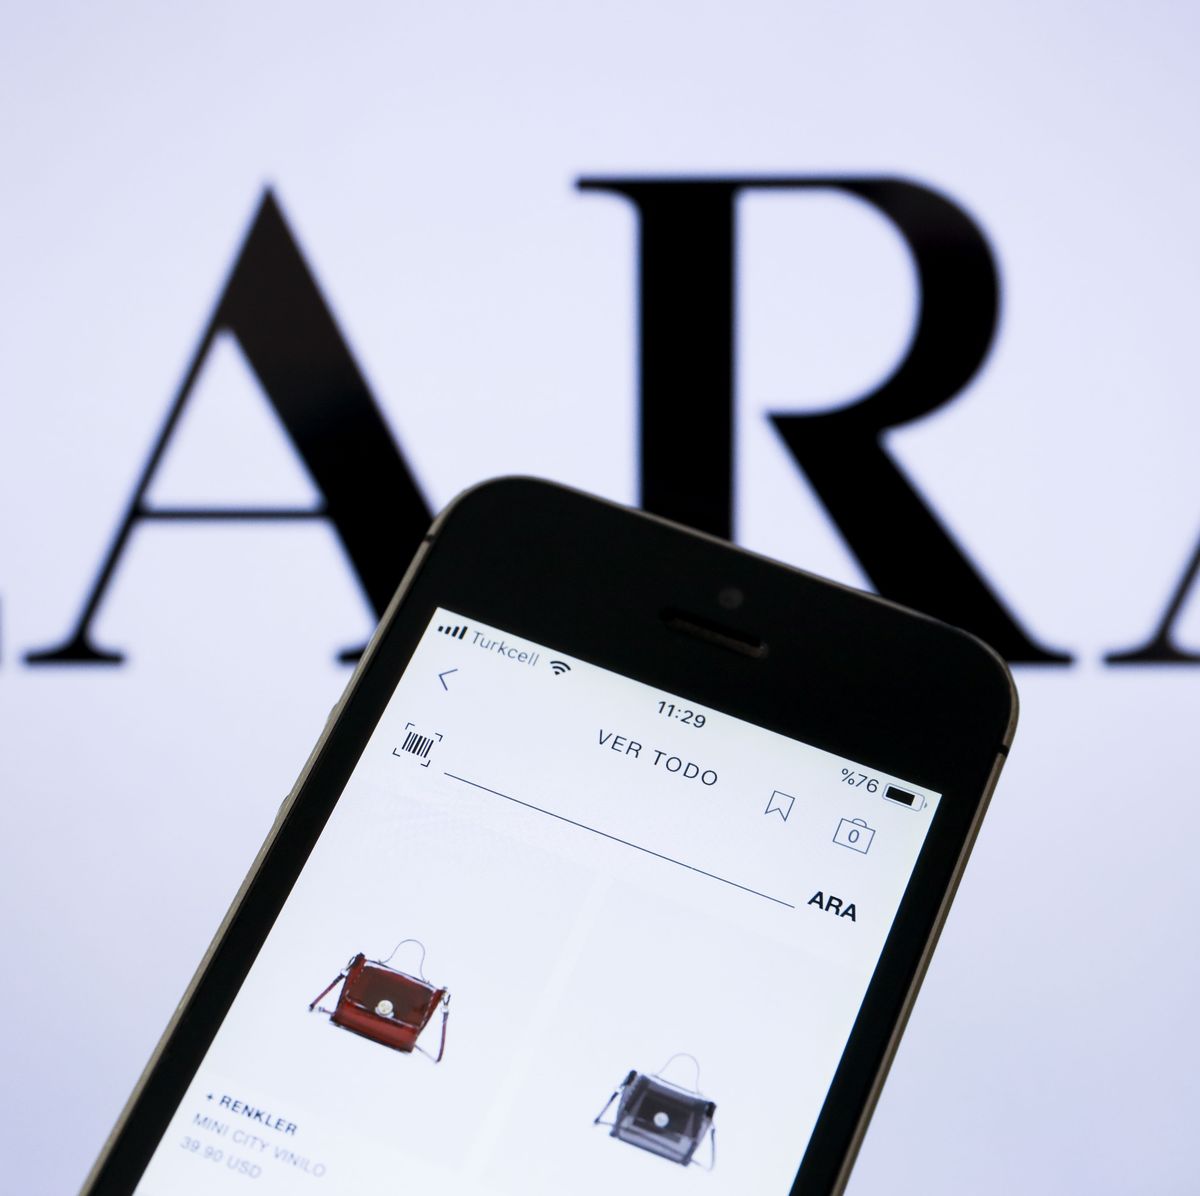 La novedad de Zara: tarjeta única